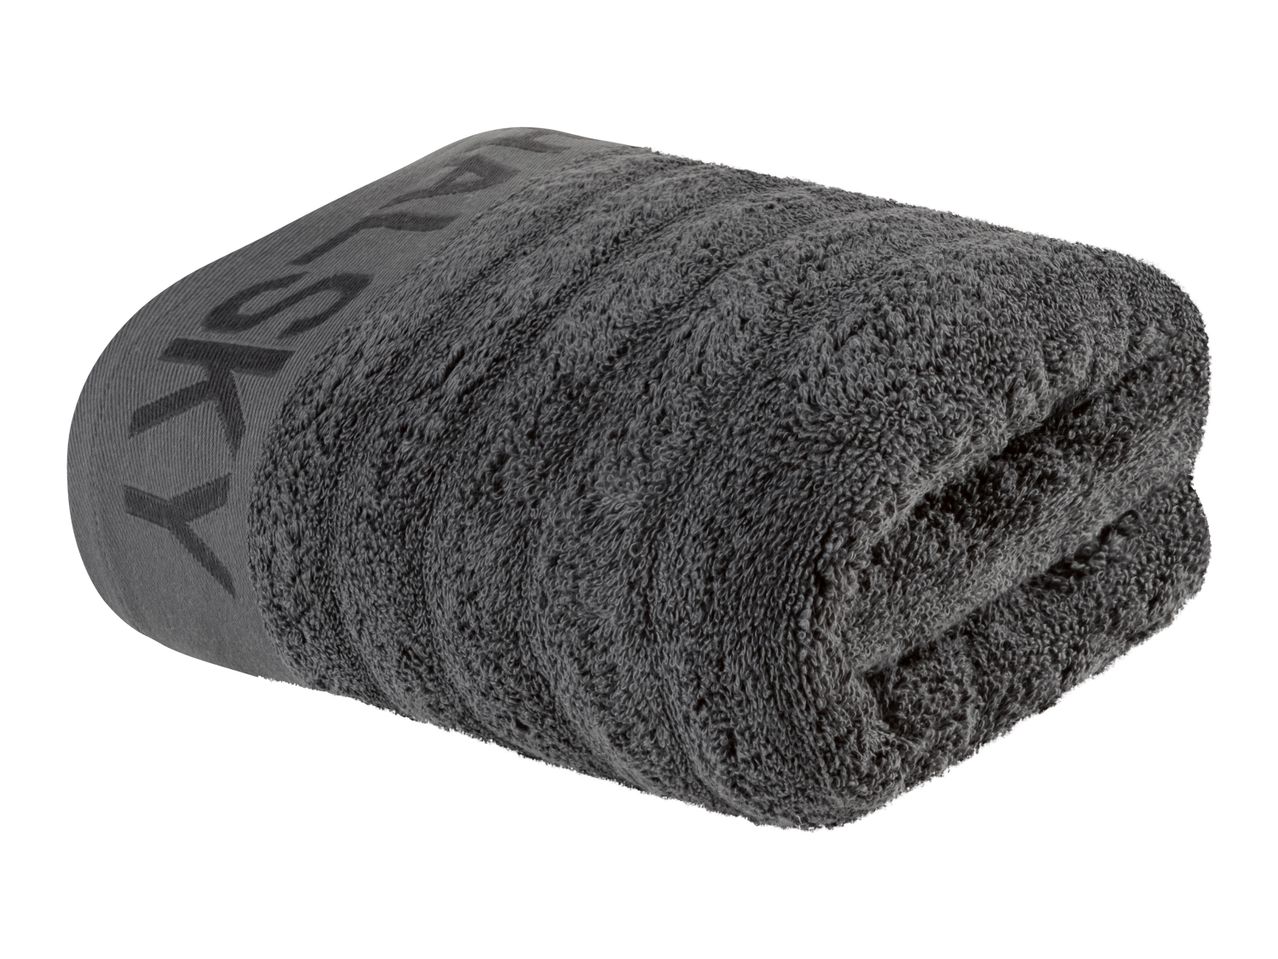 Asciugamano , prezzo 7.99 EUR  
Asciugamano  50 x 100 cm  
-  Puro cotone